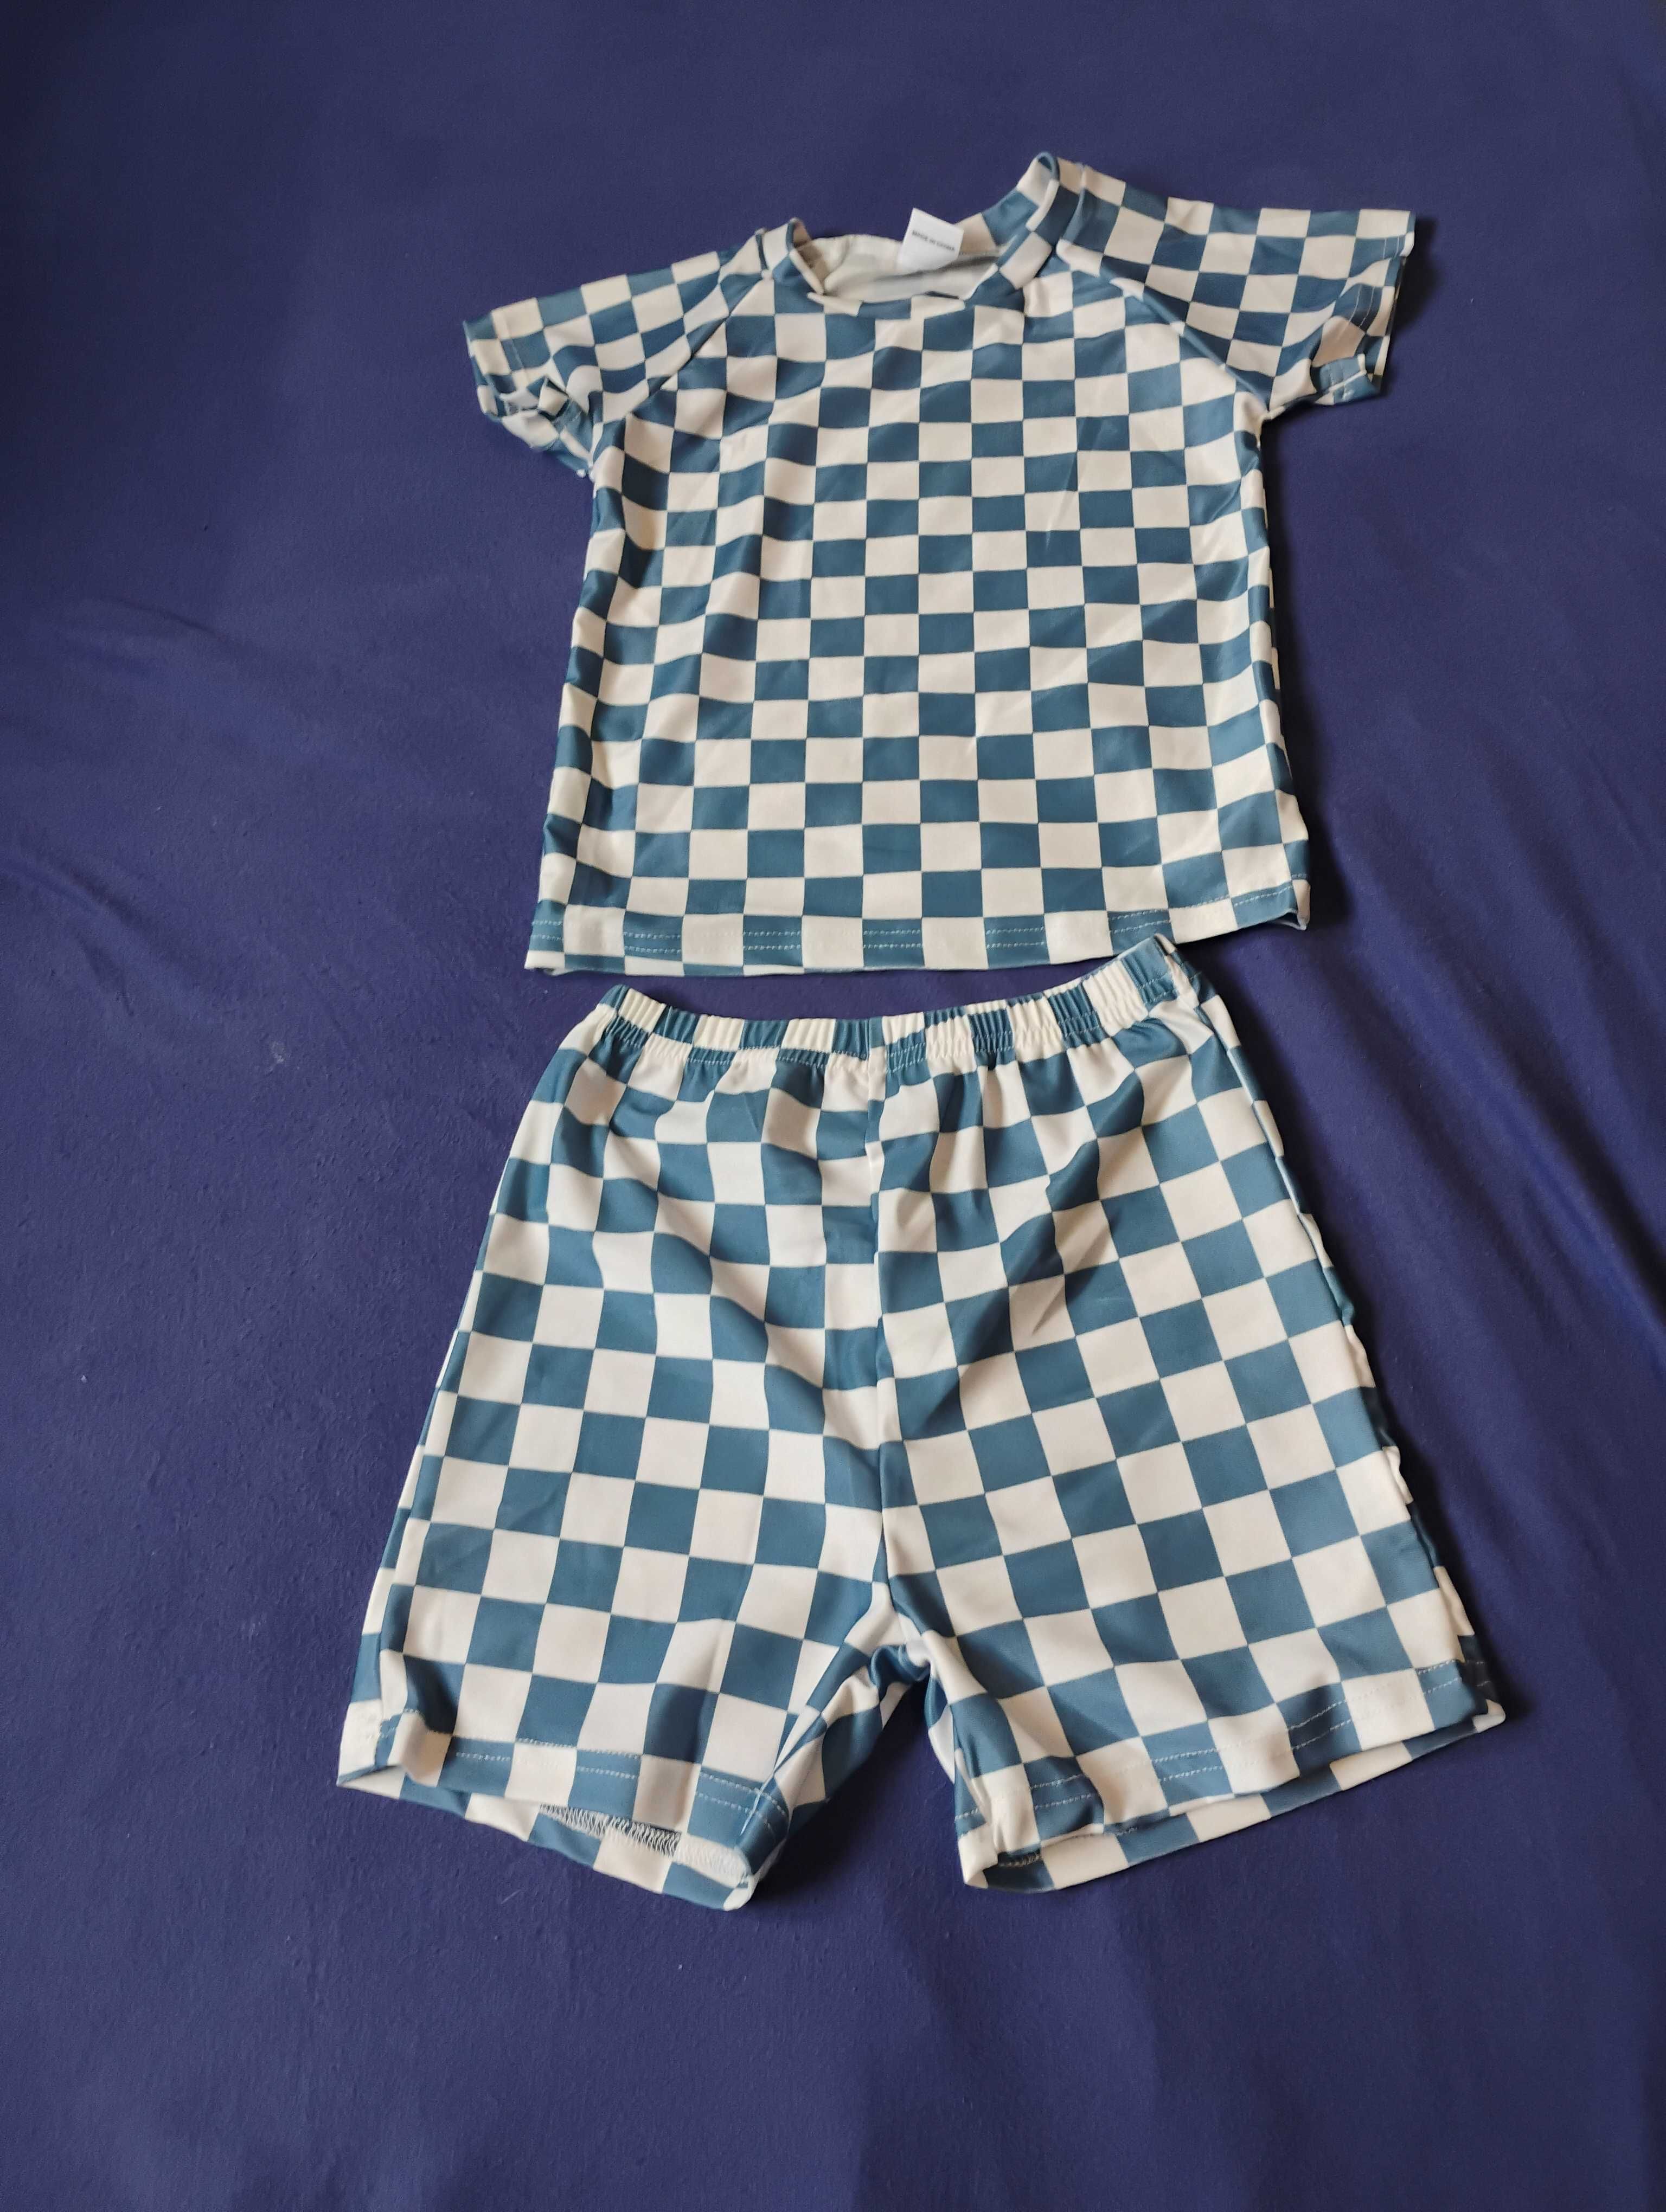 Nowy kostium kąpielowy strój kąpielowy dla chłopca 3-4 lata